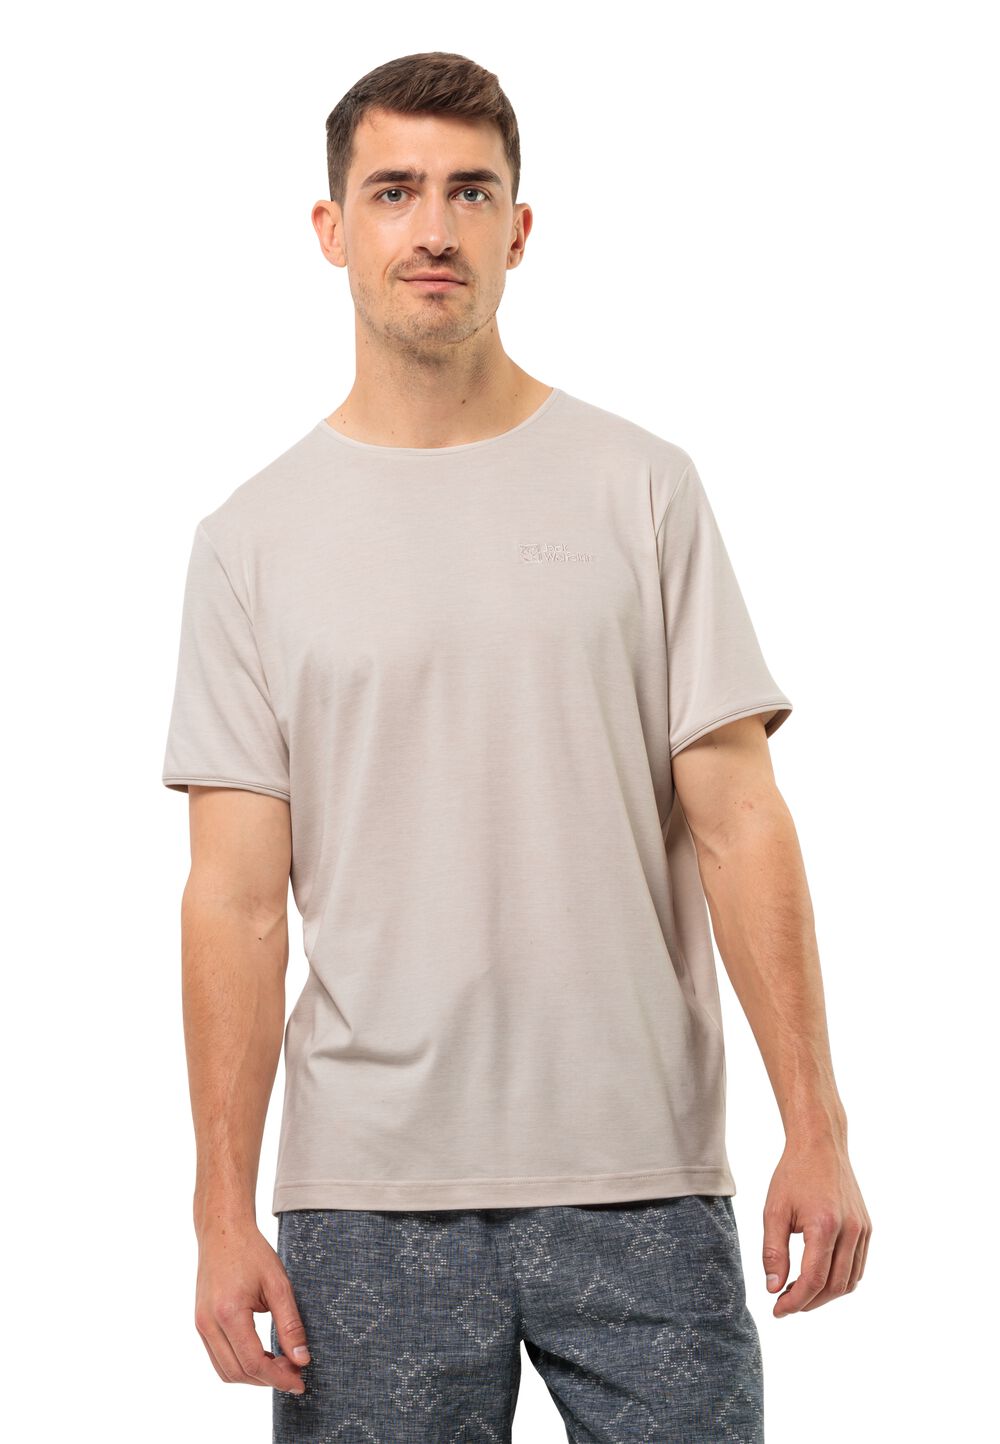 Jack Wolfskin Travel T-Shirt Men Functioneel shirt Heren XL sea shell sea shell